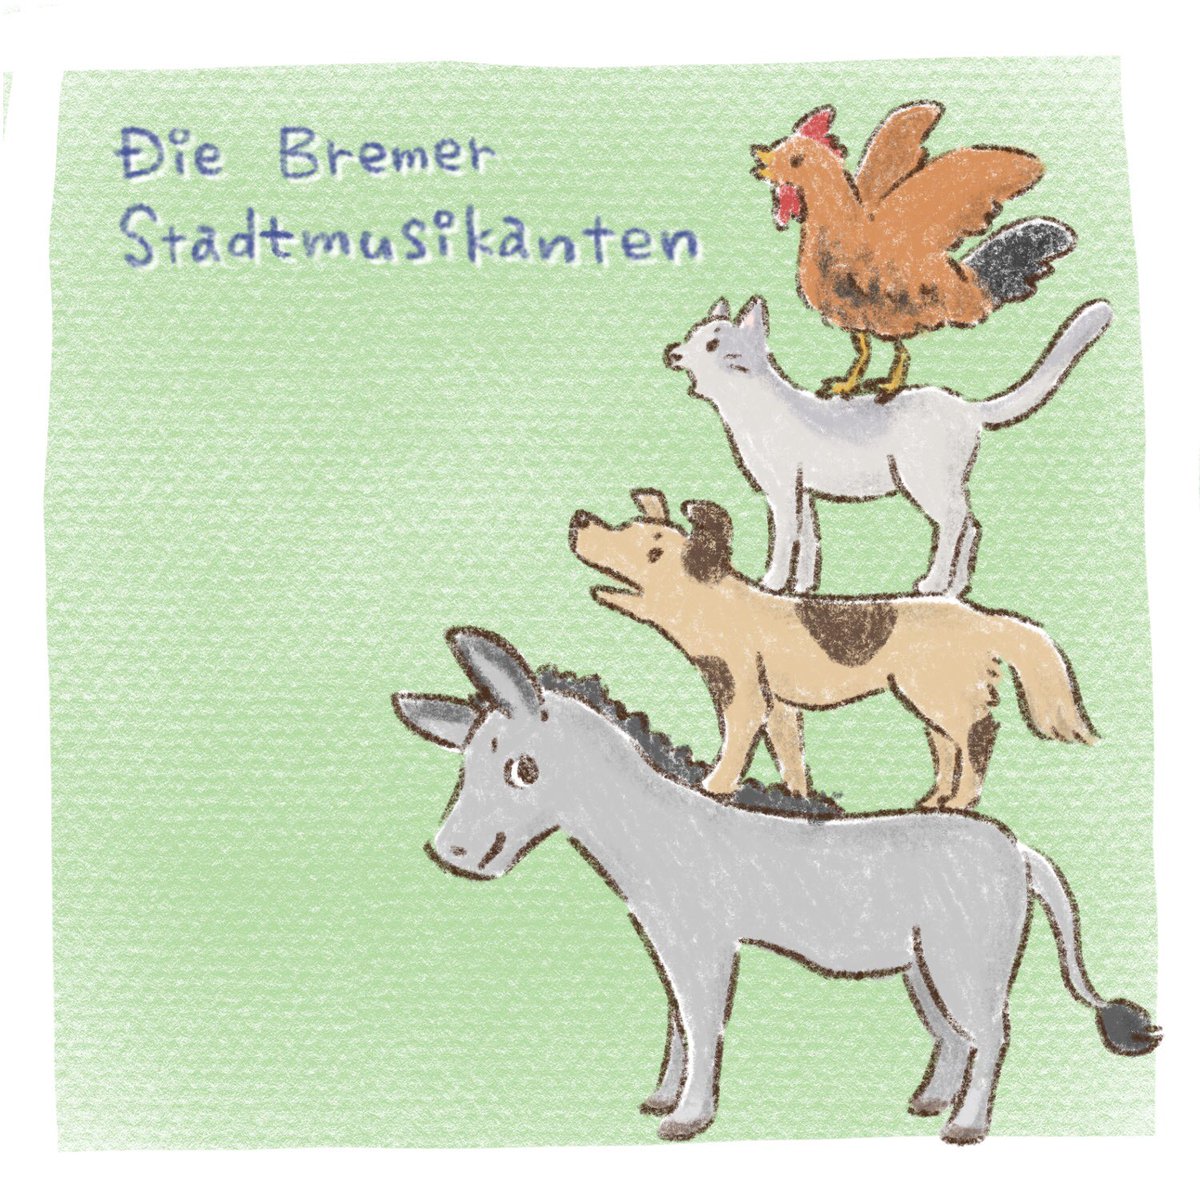 えびんぐ イラストレーター 音楽の秋ですね 音楽と聞いてブレーメンの音楽隊が浮かんだので描いてみました Musician Of Bremen イラスト かわいいイラスト ゆるいイラスト 動物イラスト ブレーメンの音楽隊 Bremen Musicianofbremen